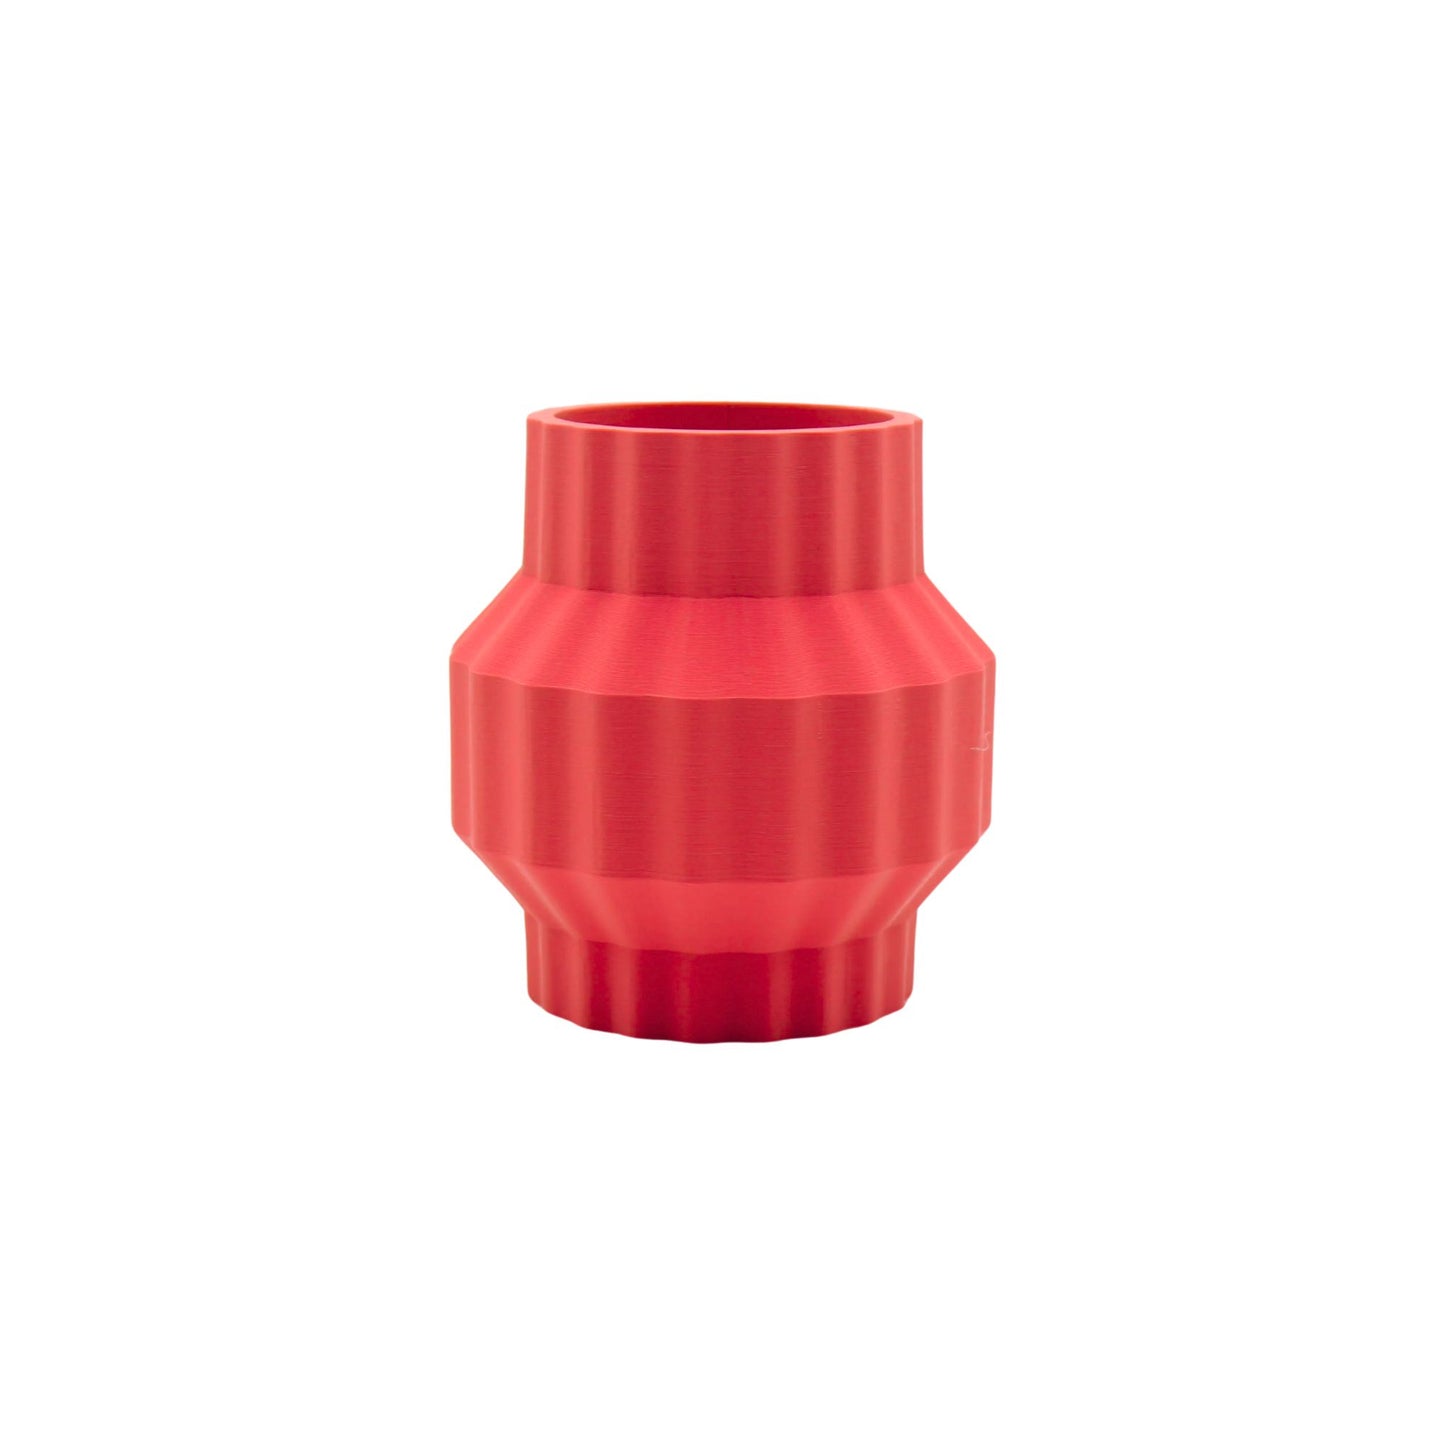 Ferrara design vase red edition